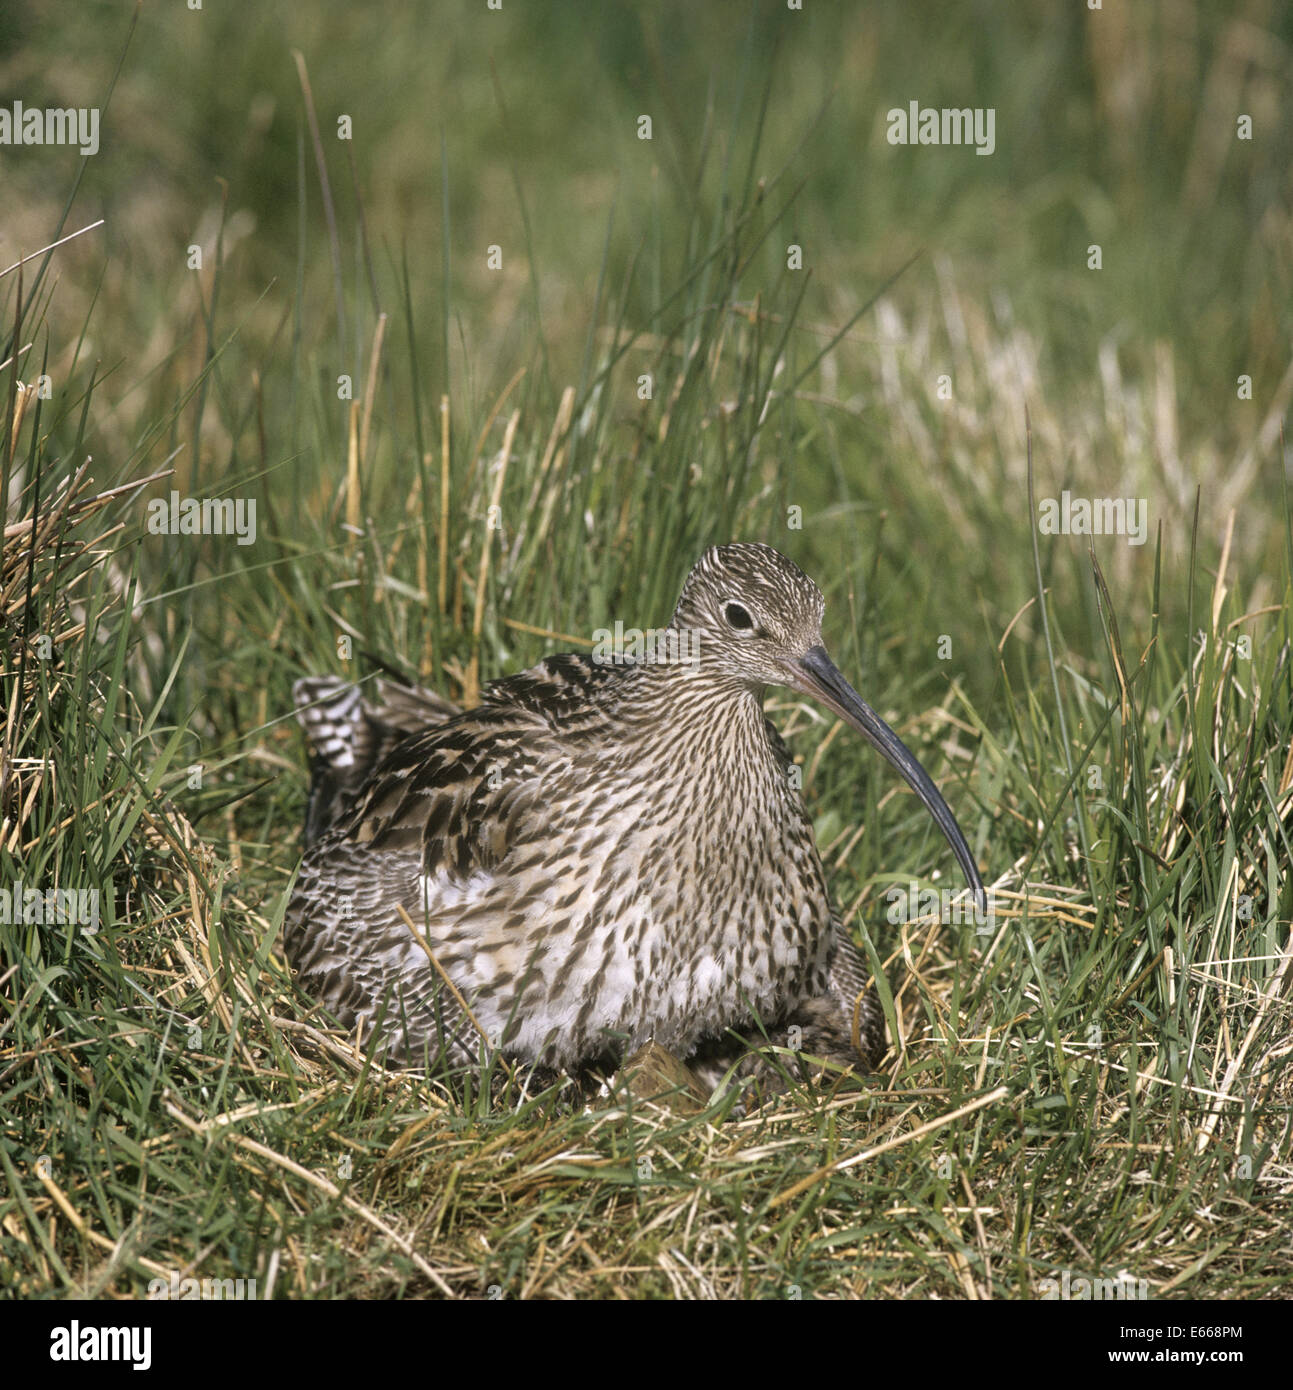 Curlew - Numenius arquata - at nest Stock Photo